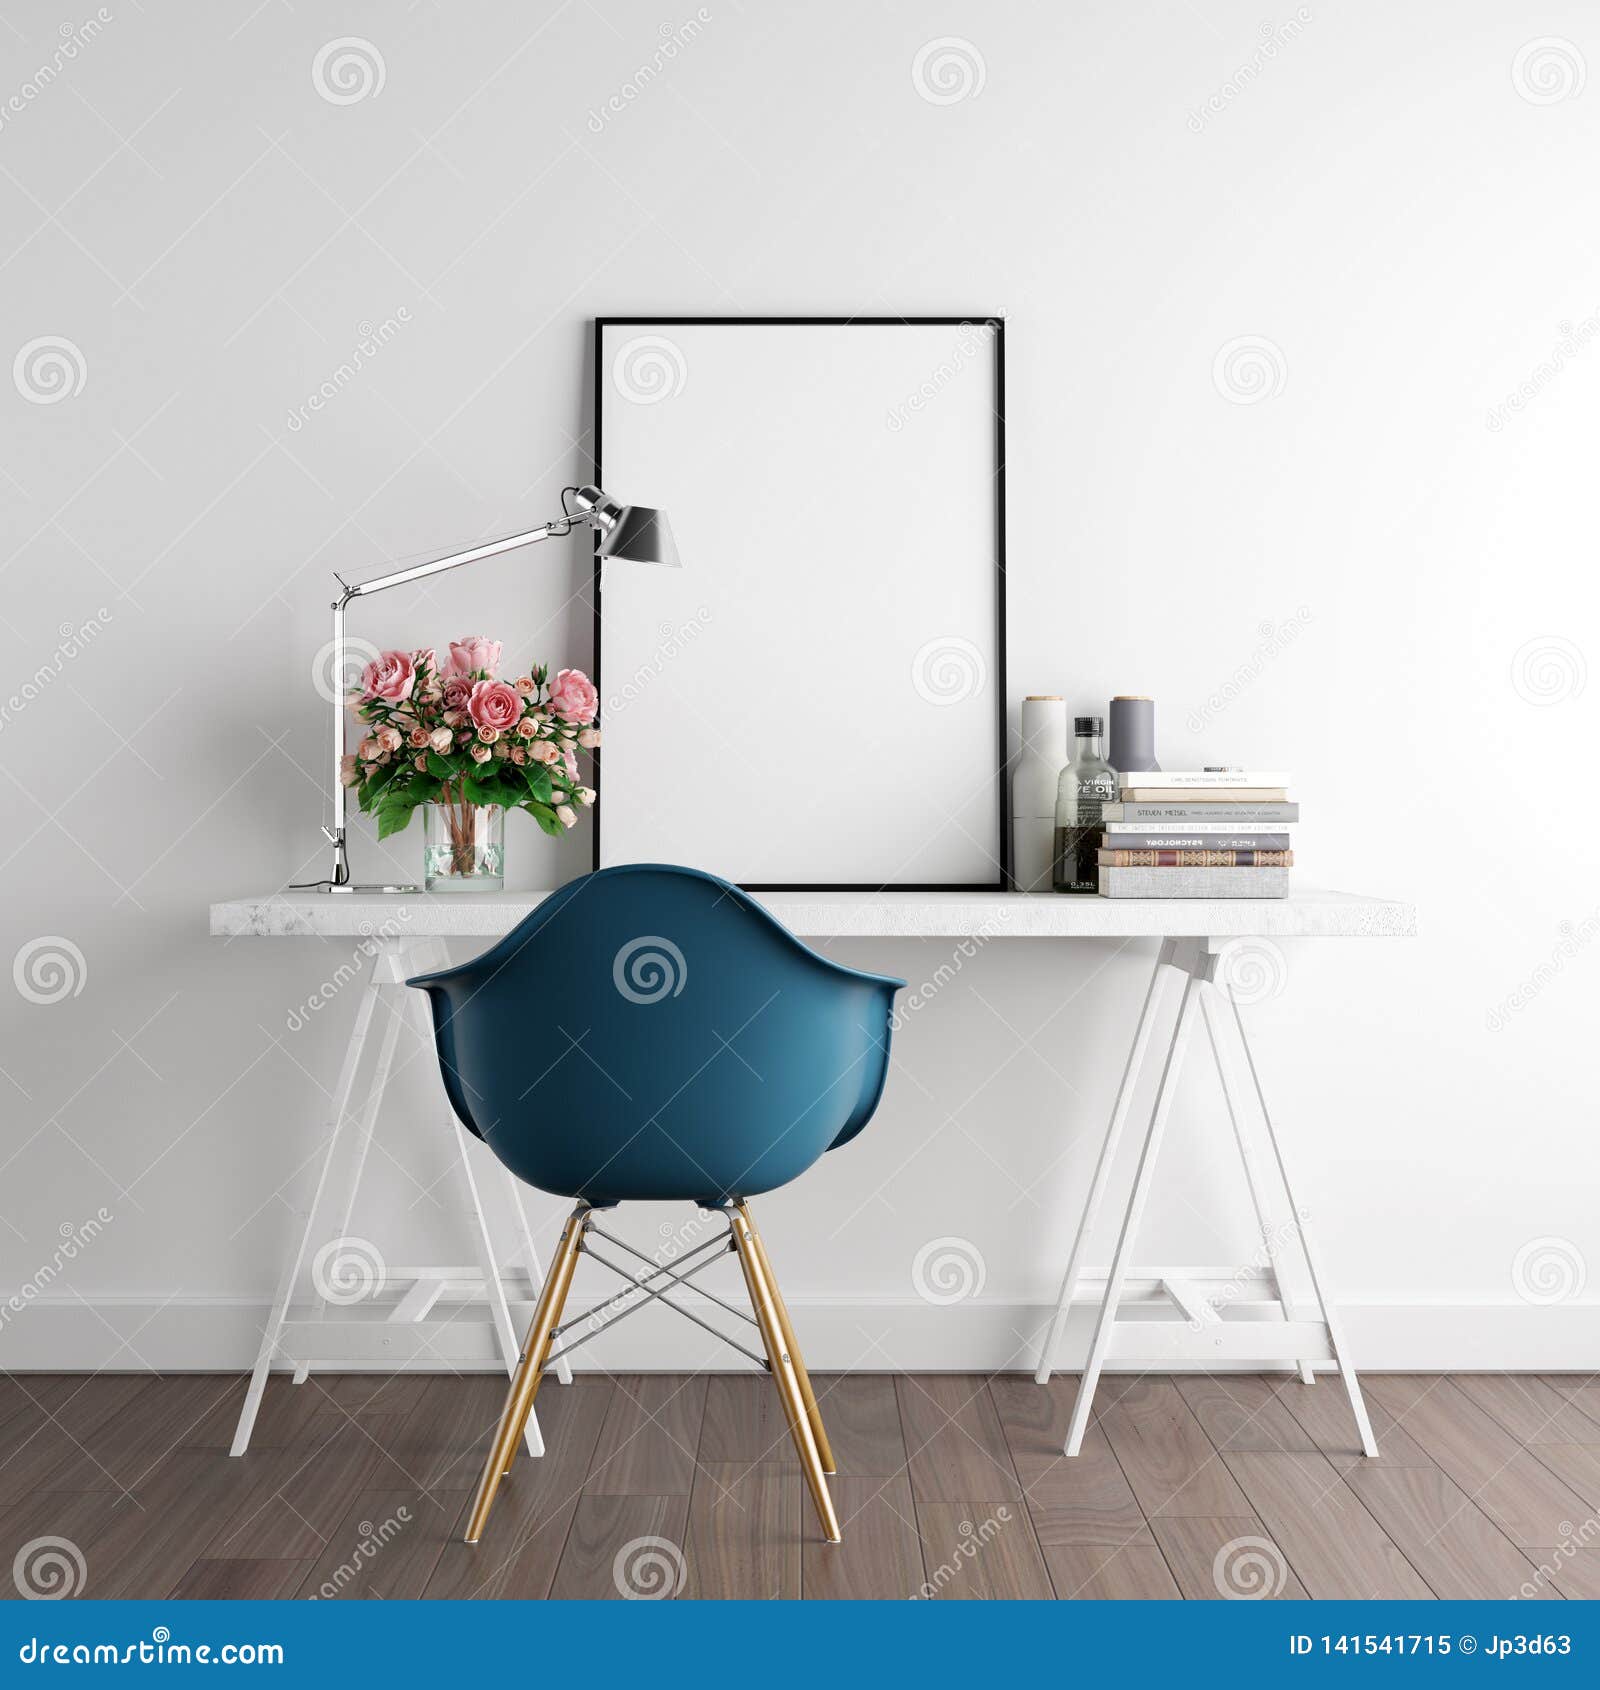 mock up poster frame with decoration - 3d render, 3d 